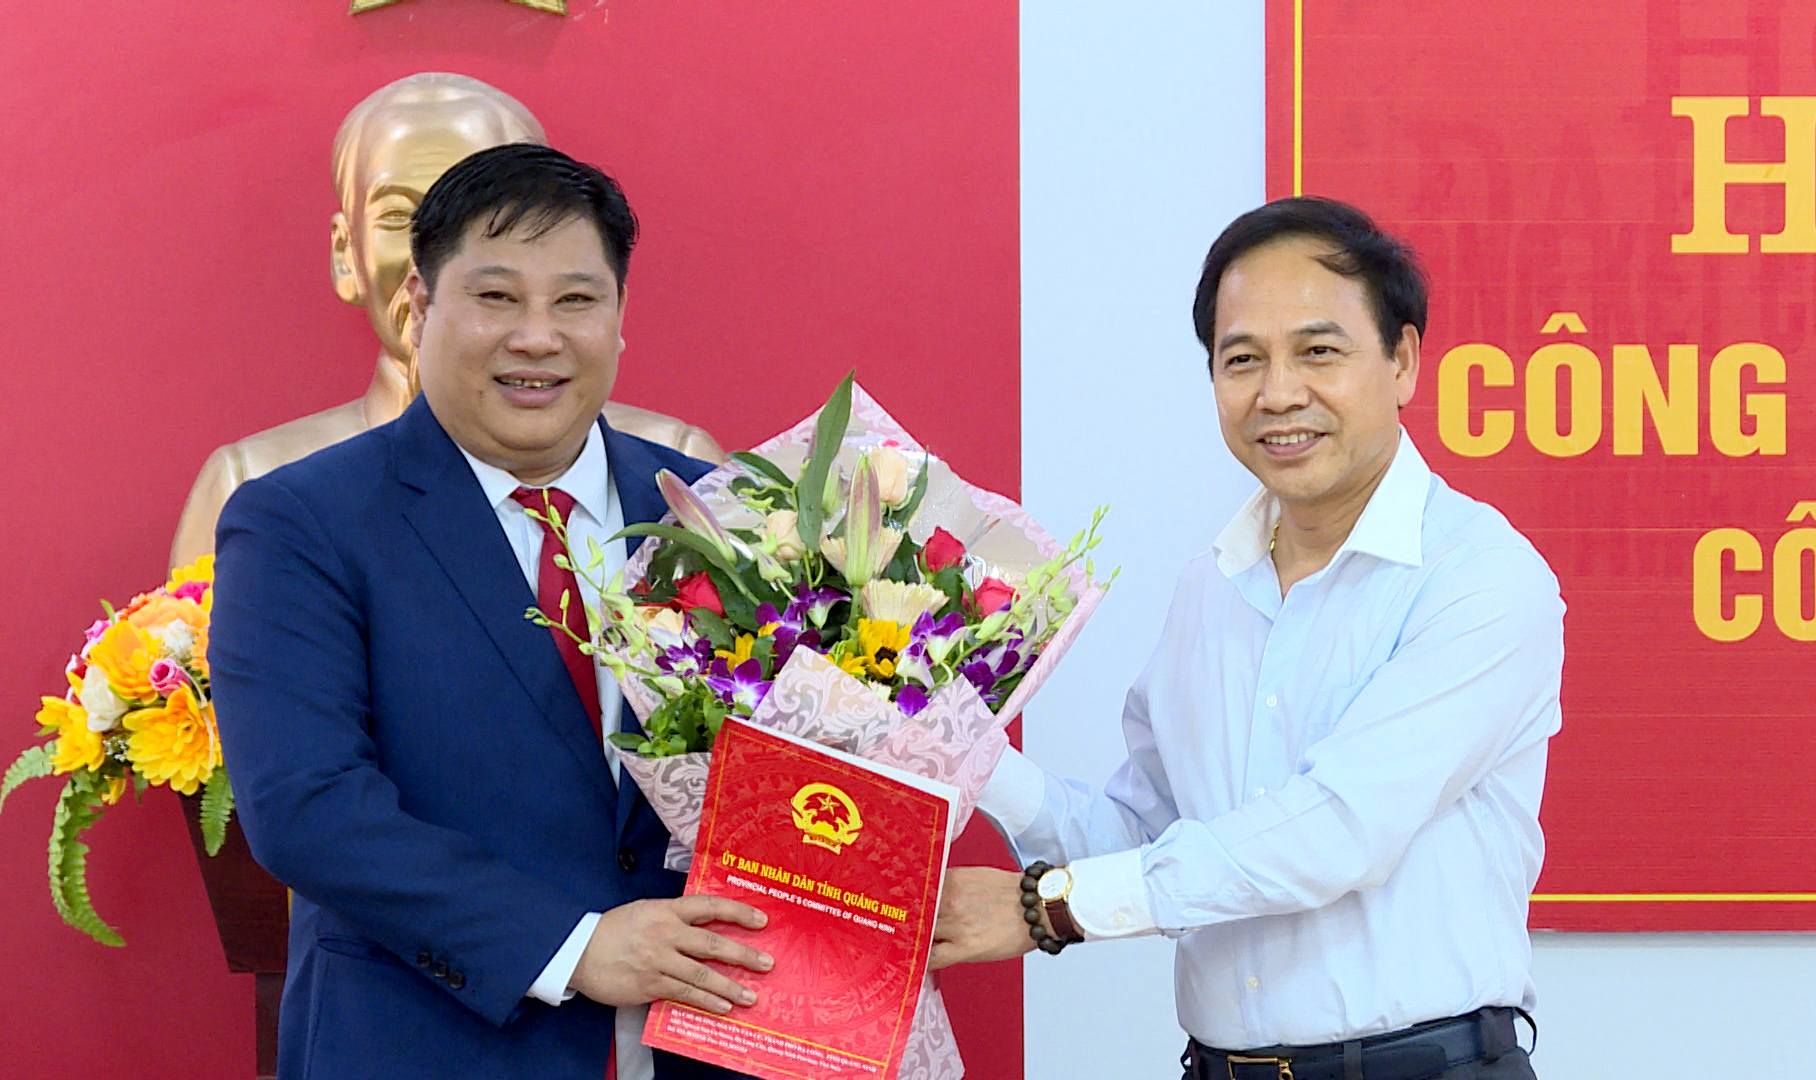 Đồng chí Đặng Huy Hậu, Phó Chủ tịch Thường trực UBND tỉnh, trao quyết định cho ông Đỗ Khánh Tùng giữ chức vụ Chủ tịch UBND huyện Ba Chẽ khóa XIX, nhiệm kỳ 2016-2021.